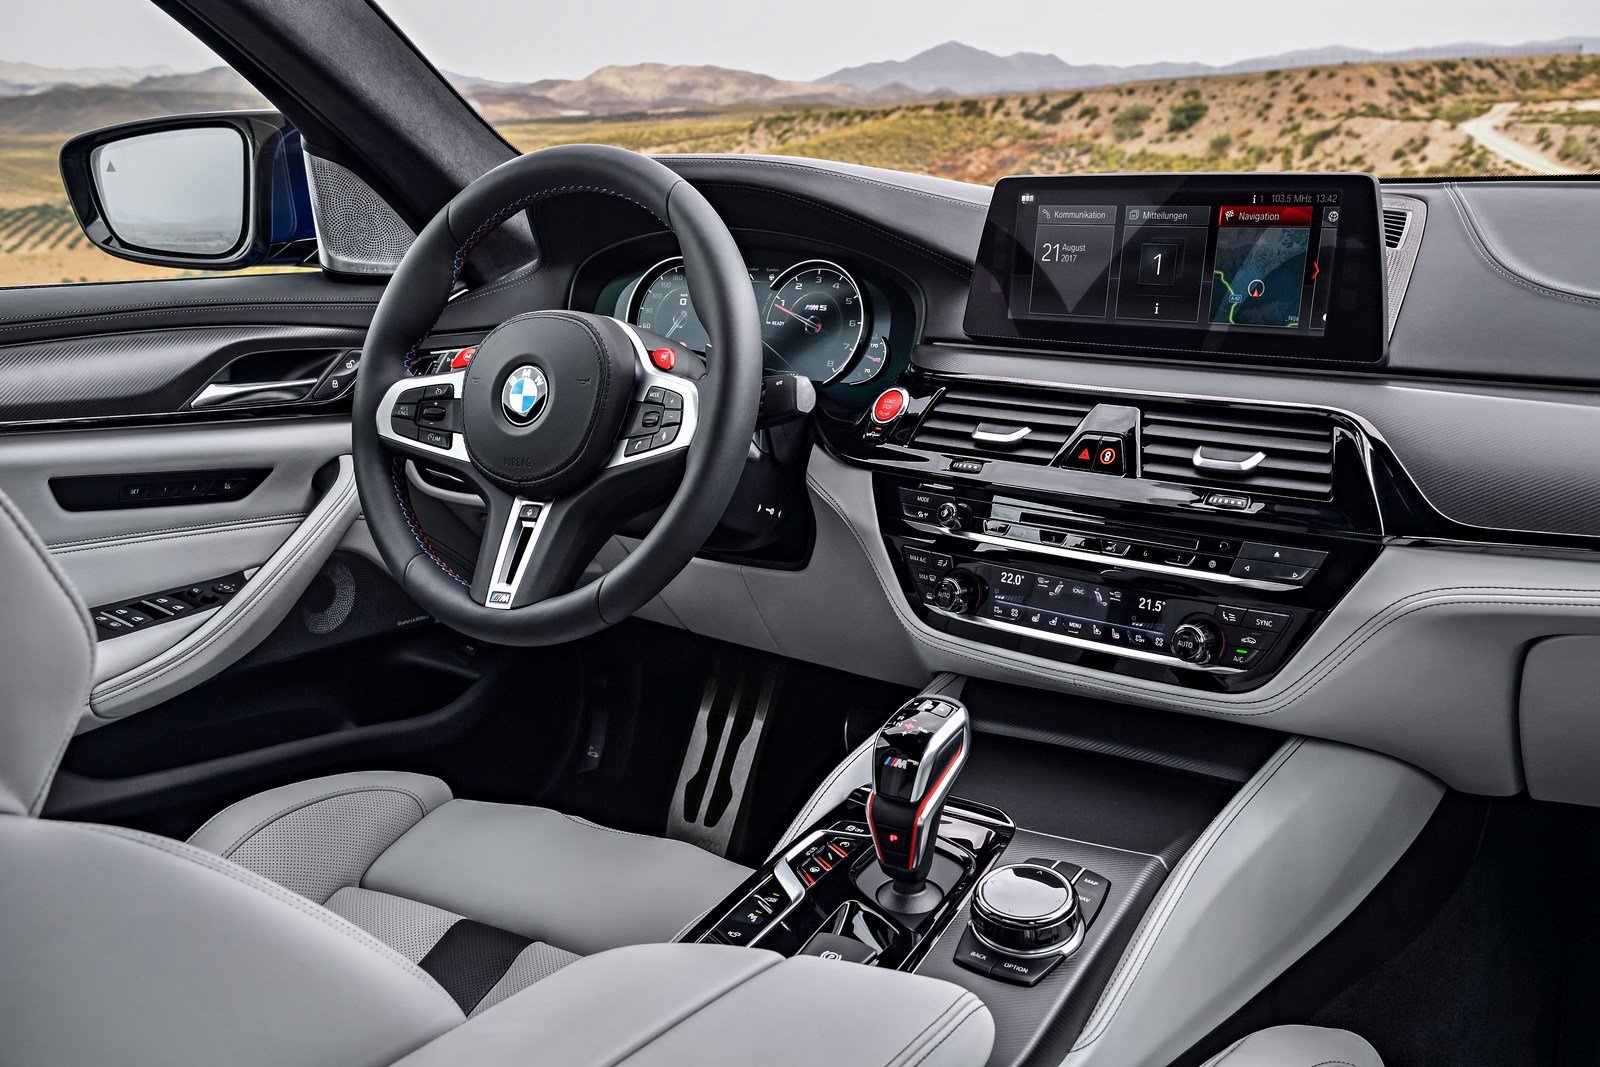 Nové BMW M5